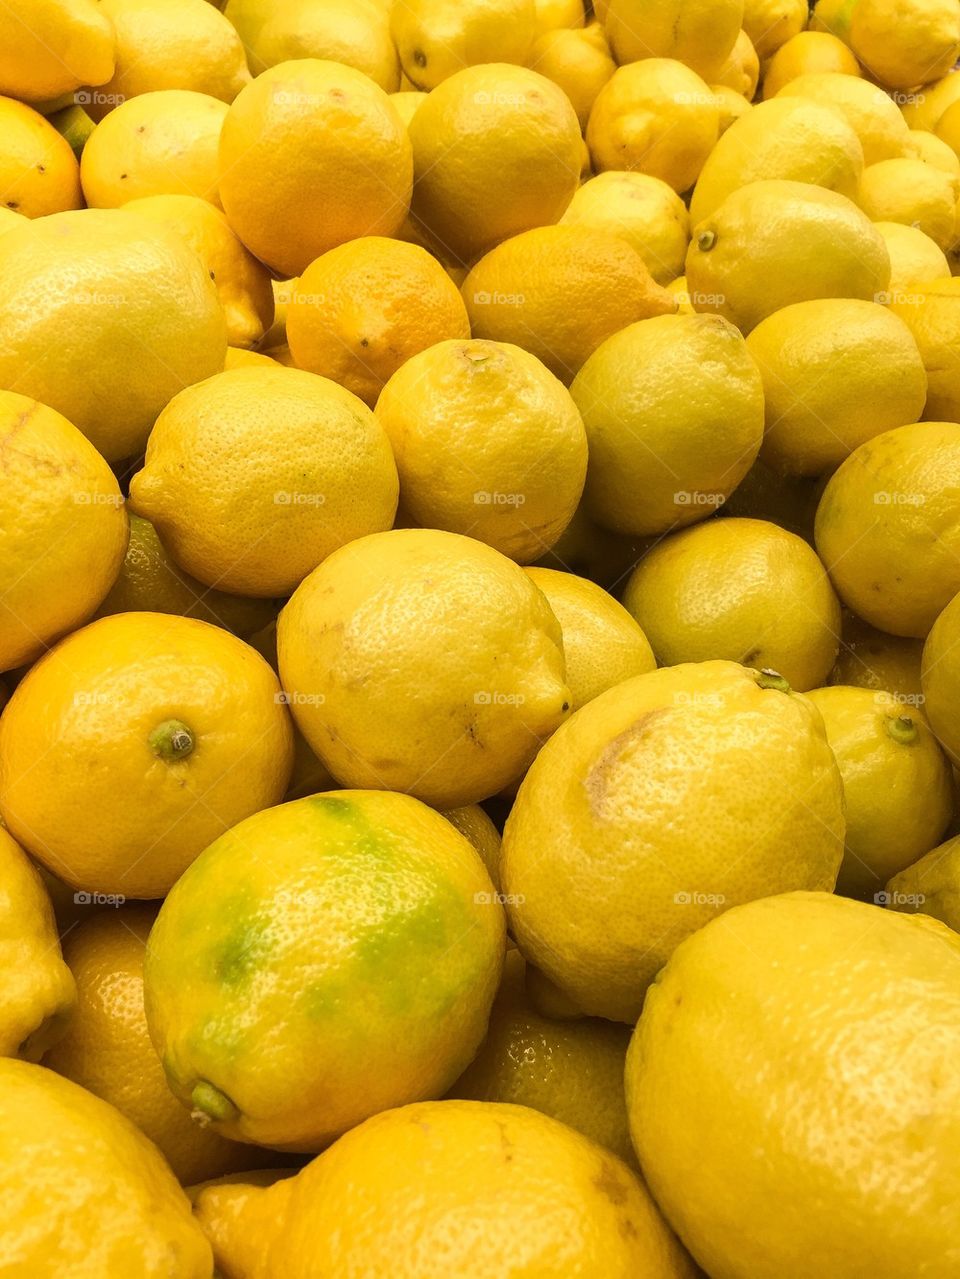 When Life Gives You Lemons, Make Lemonade